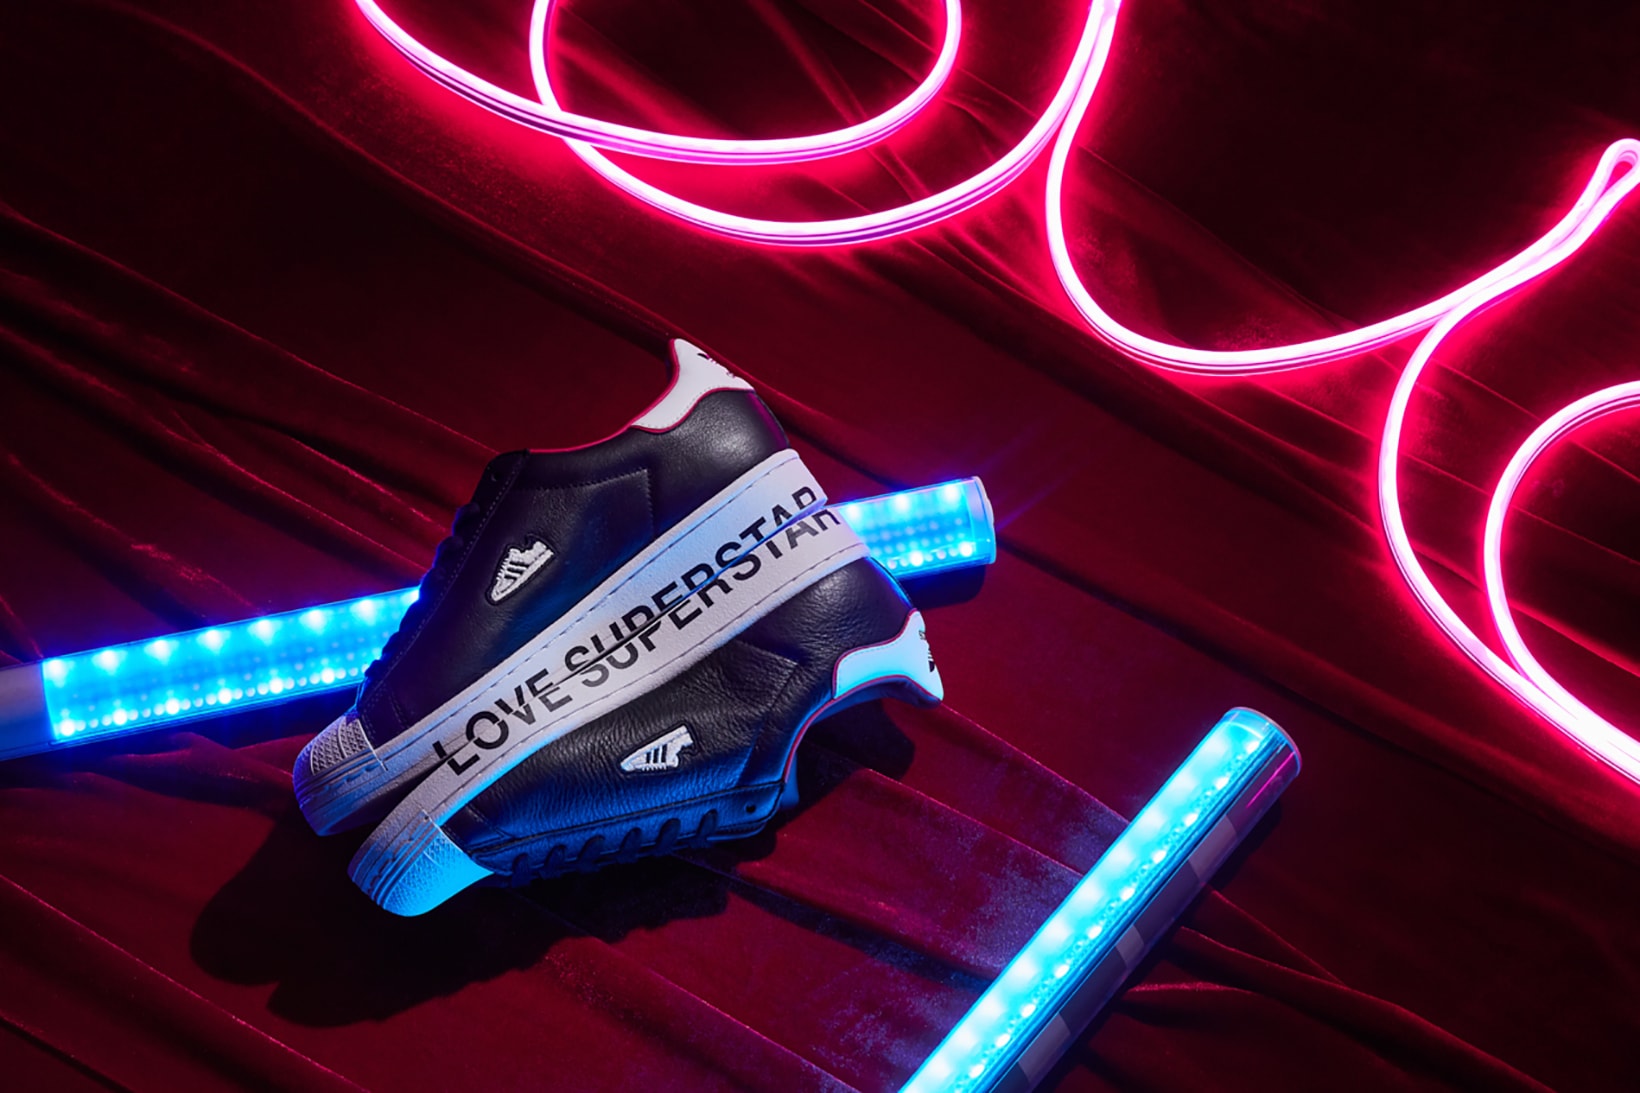 adidas originals valentines day sneakers superstar shoes sneakerhead footwear 